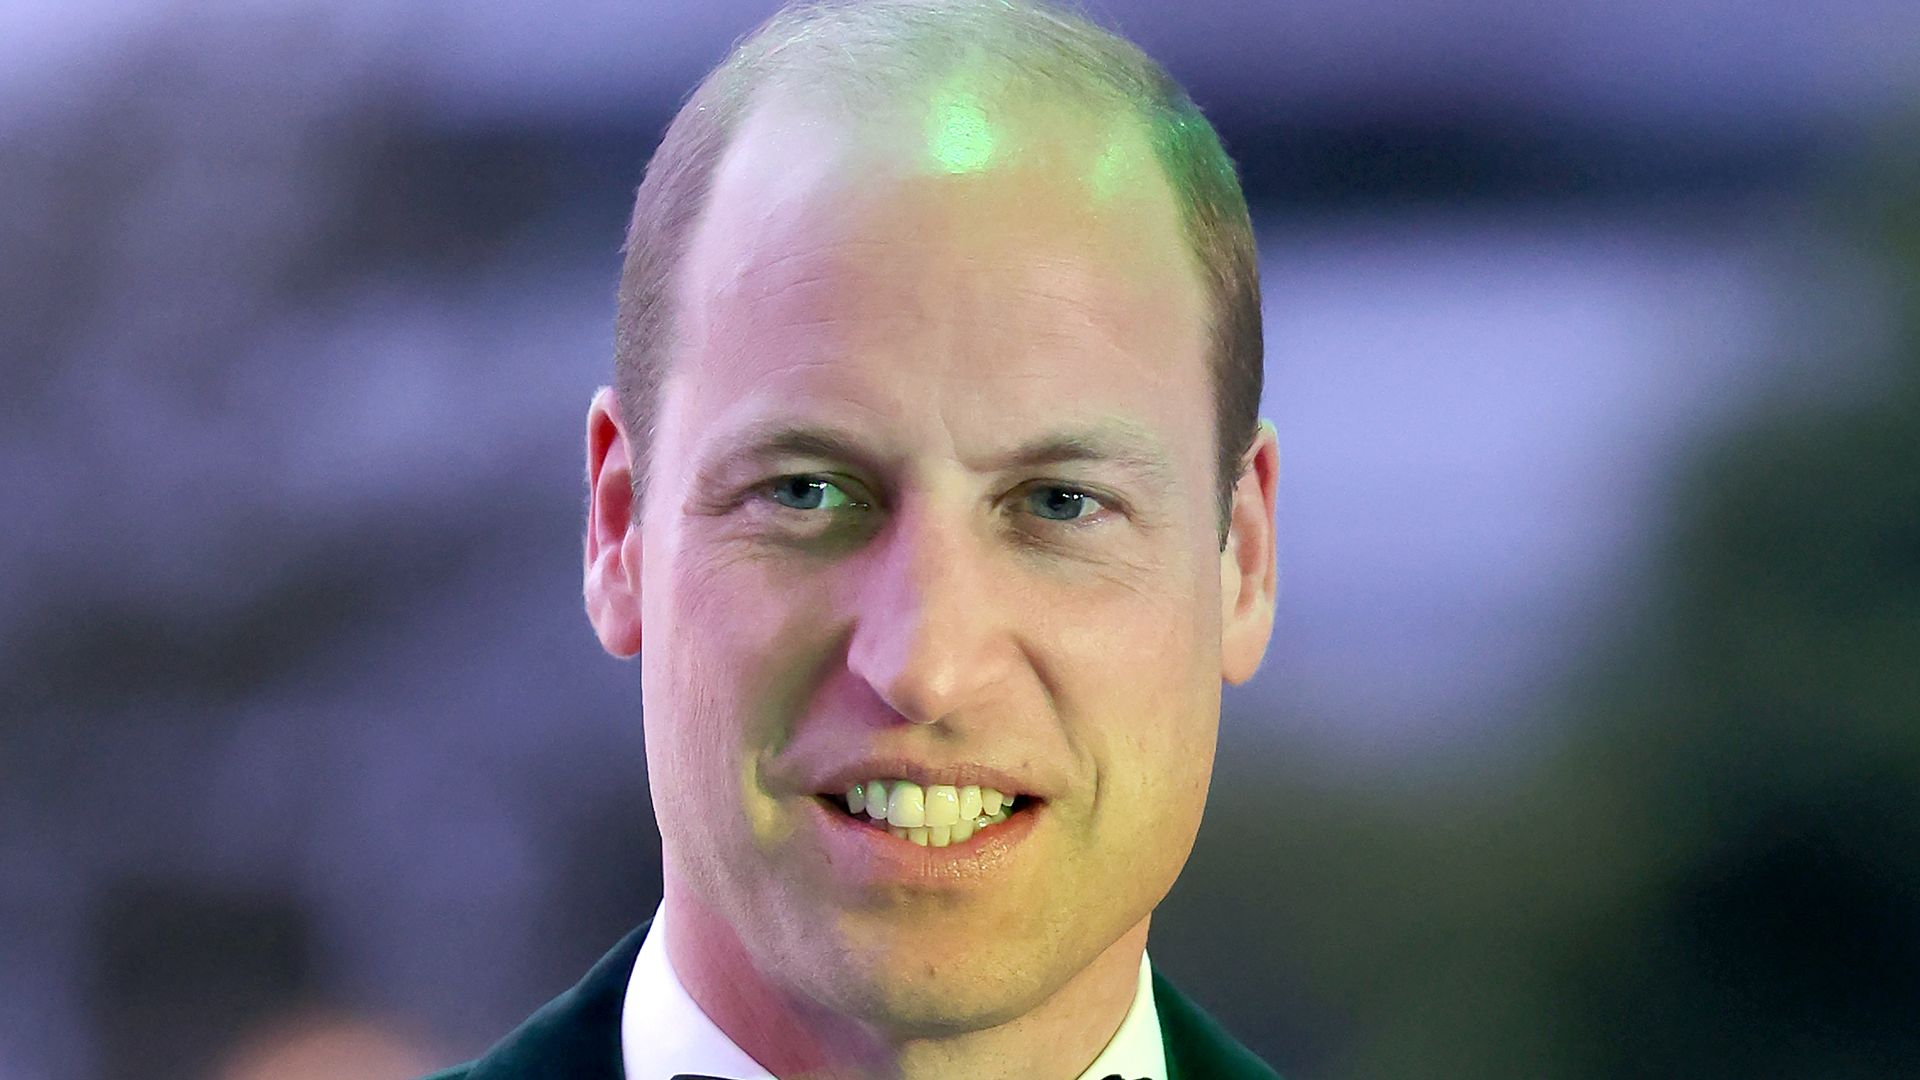 Prince William in tuxedo